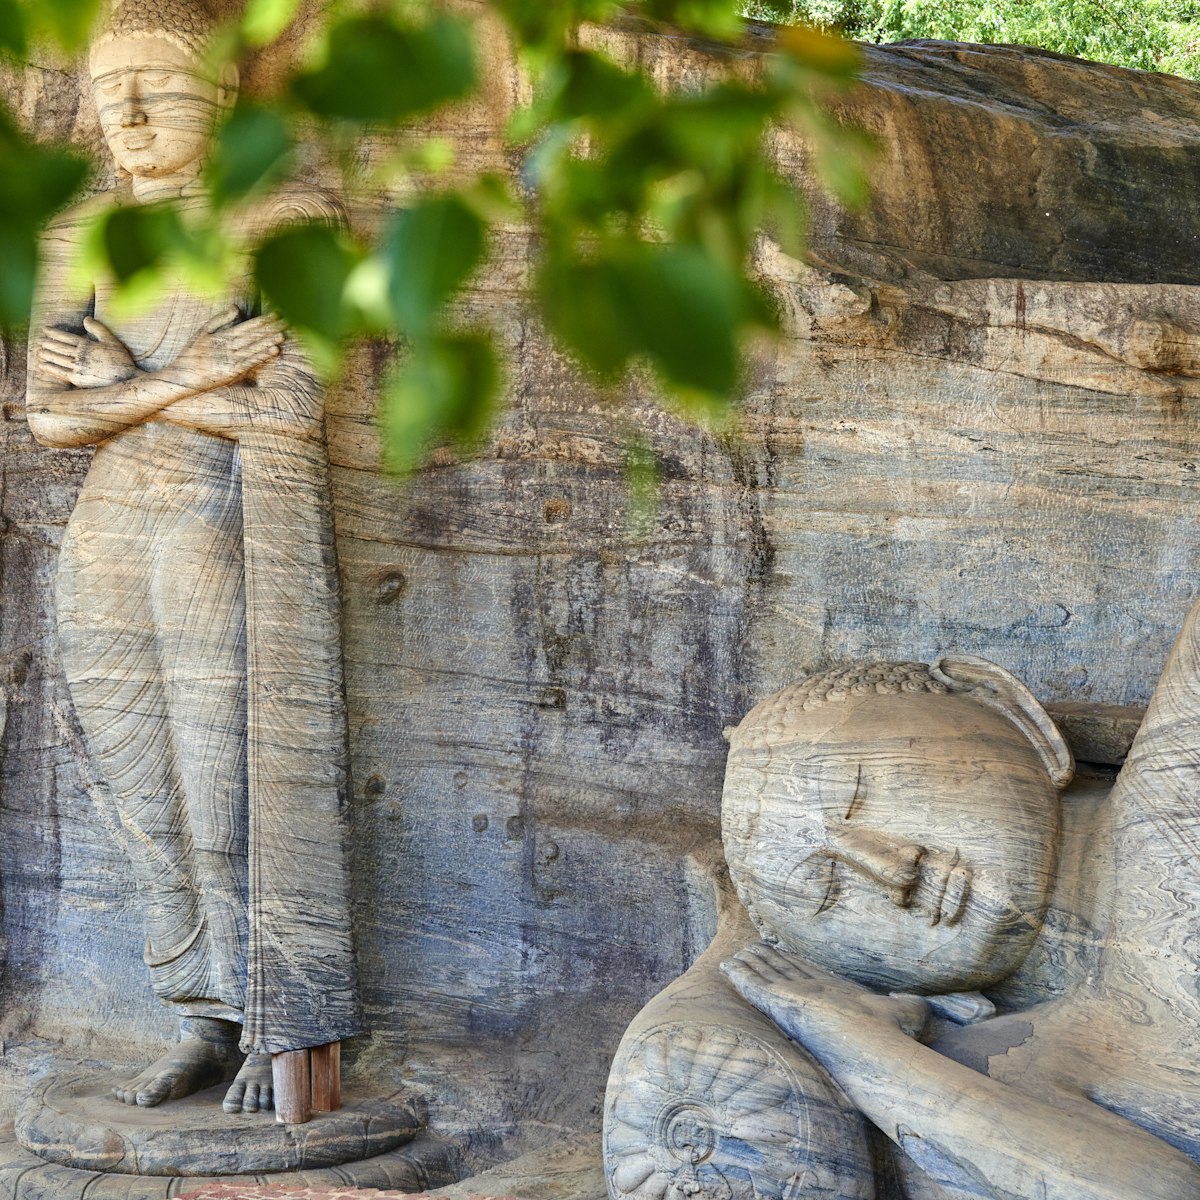 Sri Lanka, Polonnaruwa, Gal Vihara temple